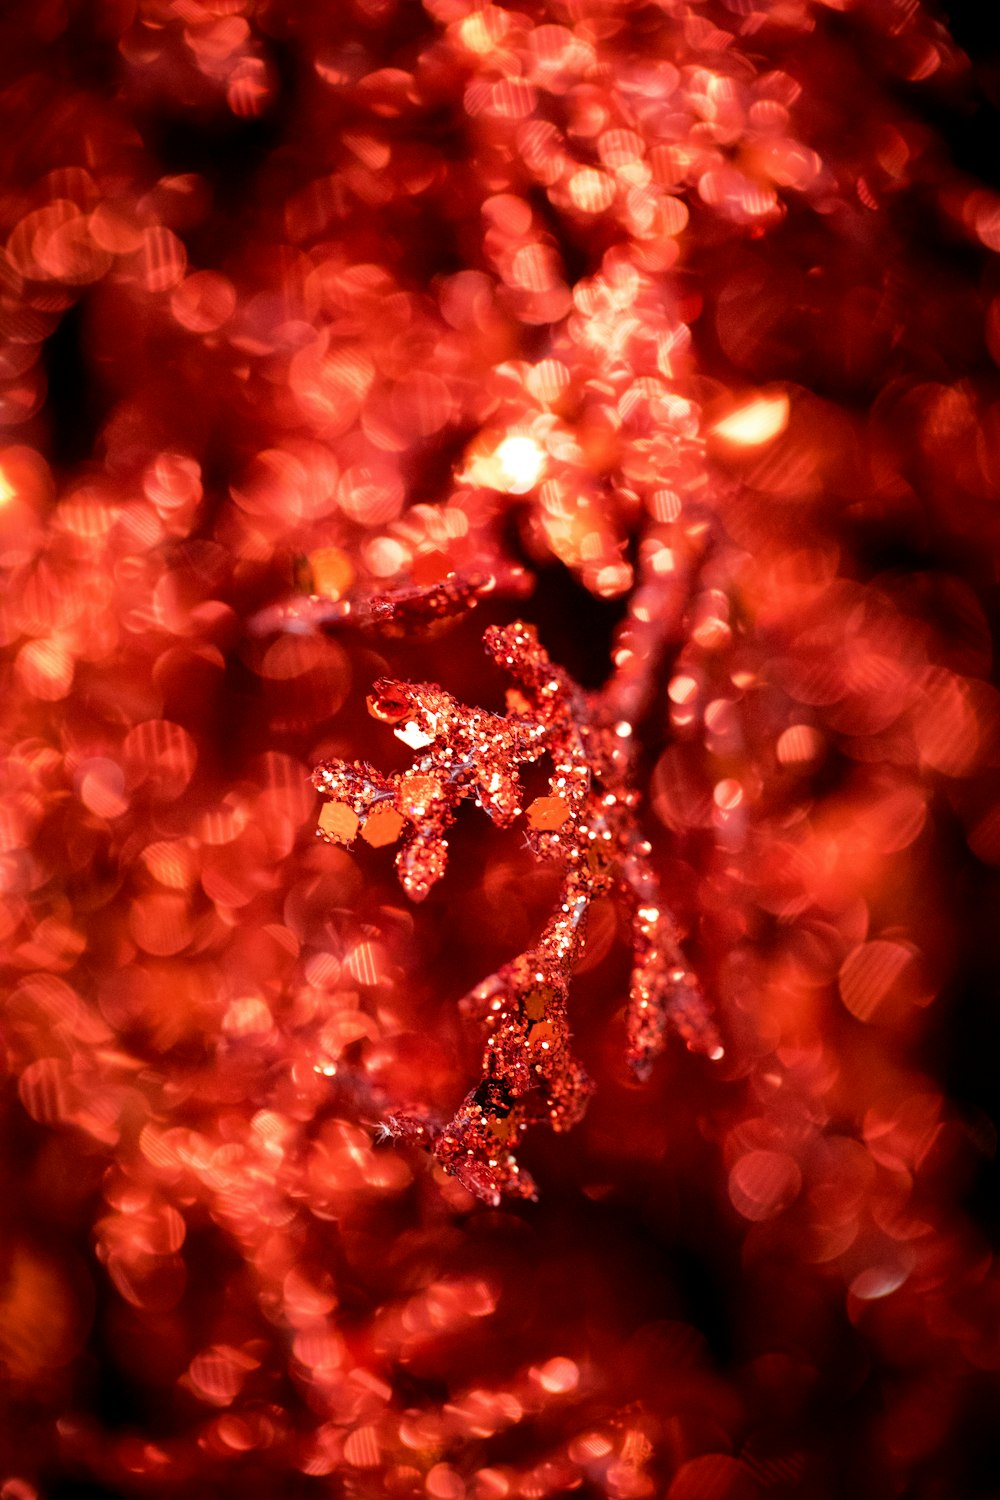 Đỏ Giáng sinh chính là một trong những màu sắc đặc trưng của mùa lễ hội. Hình ảnh liên quan đến từ khóa này mang đến cho bạn những hình ảnh rực rỡ, tươi vui và ấm áp của mùa Giáng sinh. Hãy cùng tận hưởng mùa lễ hội đặc biệt này bằng cách xem hình ảnh liên quan đến đỏ Giáng sinh.